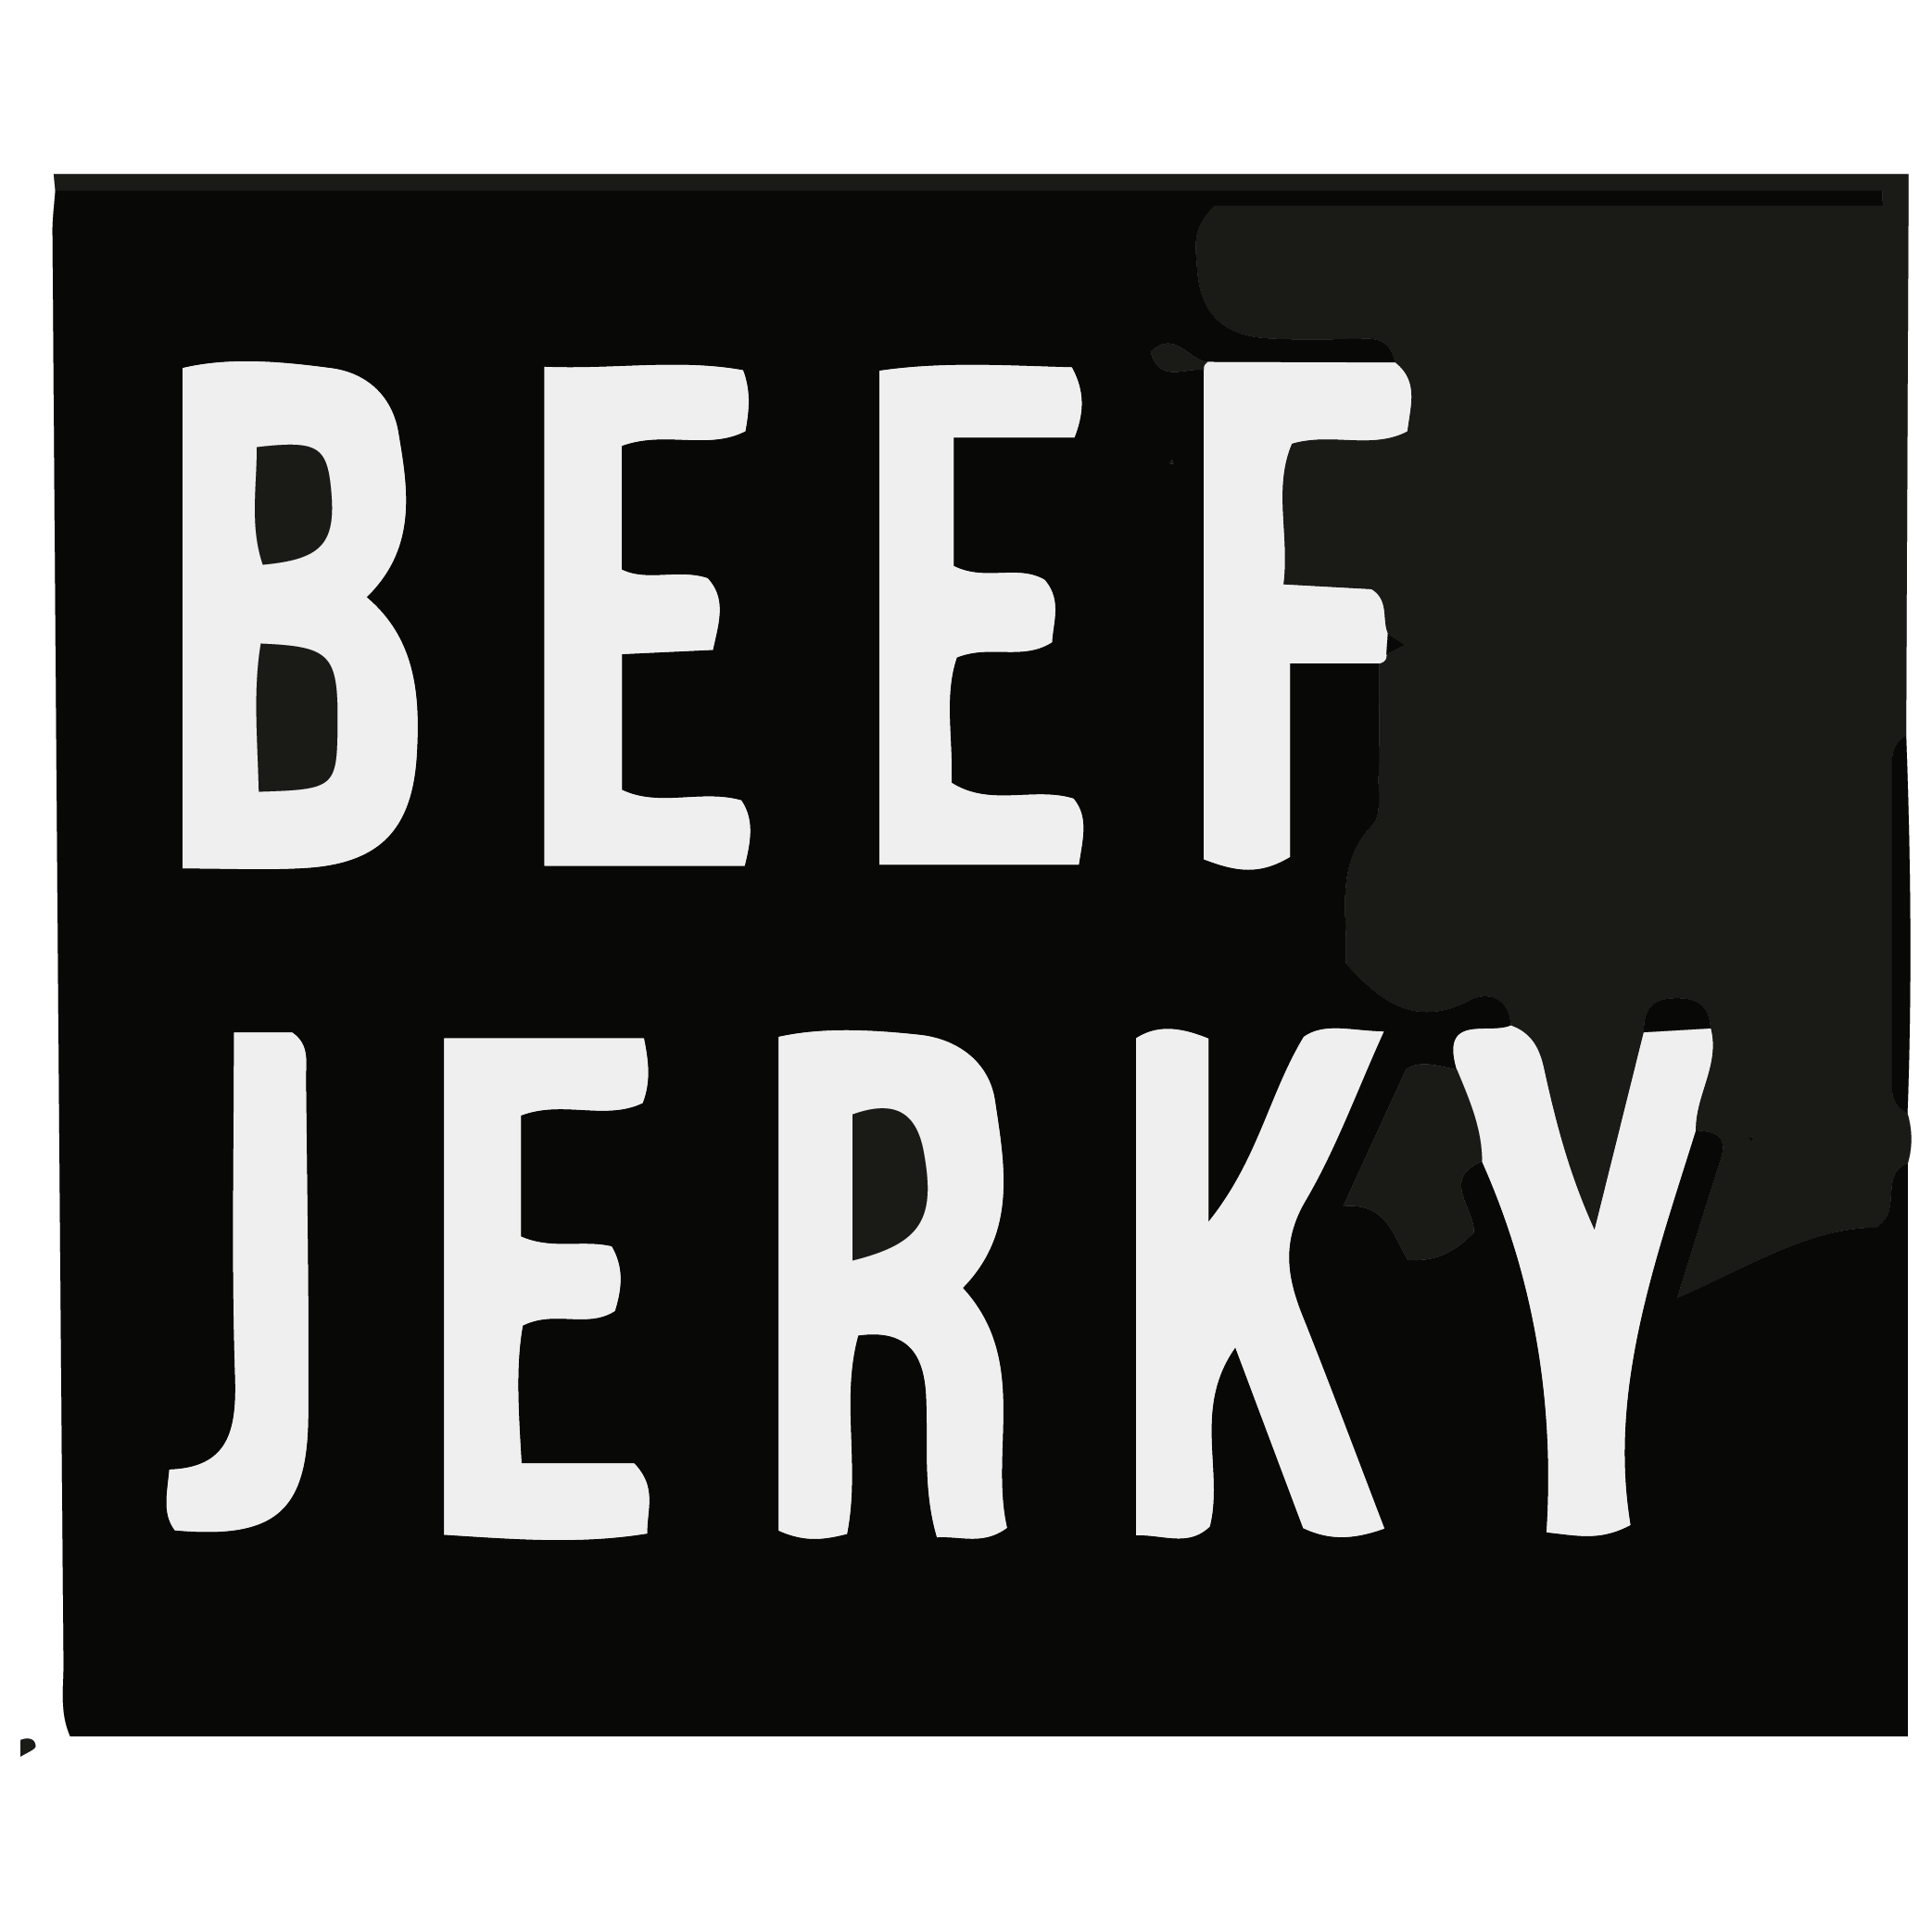 BEEF JERKY